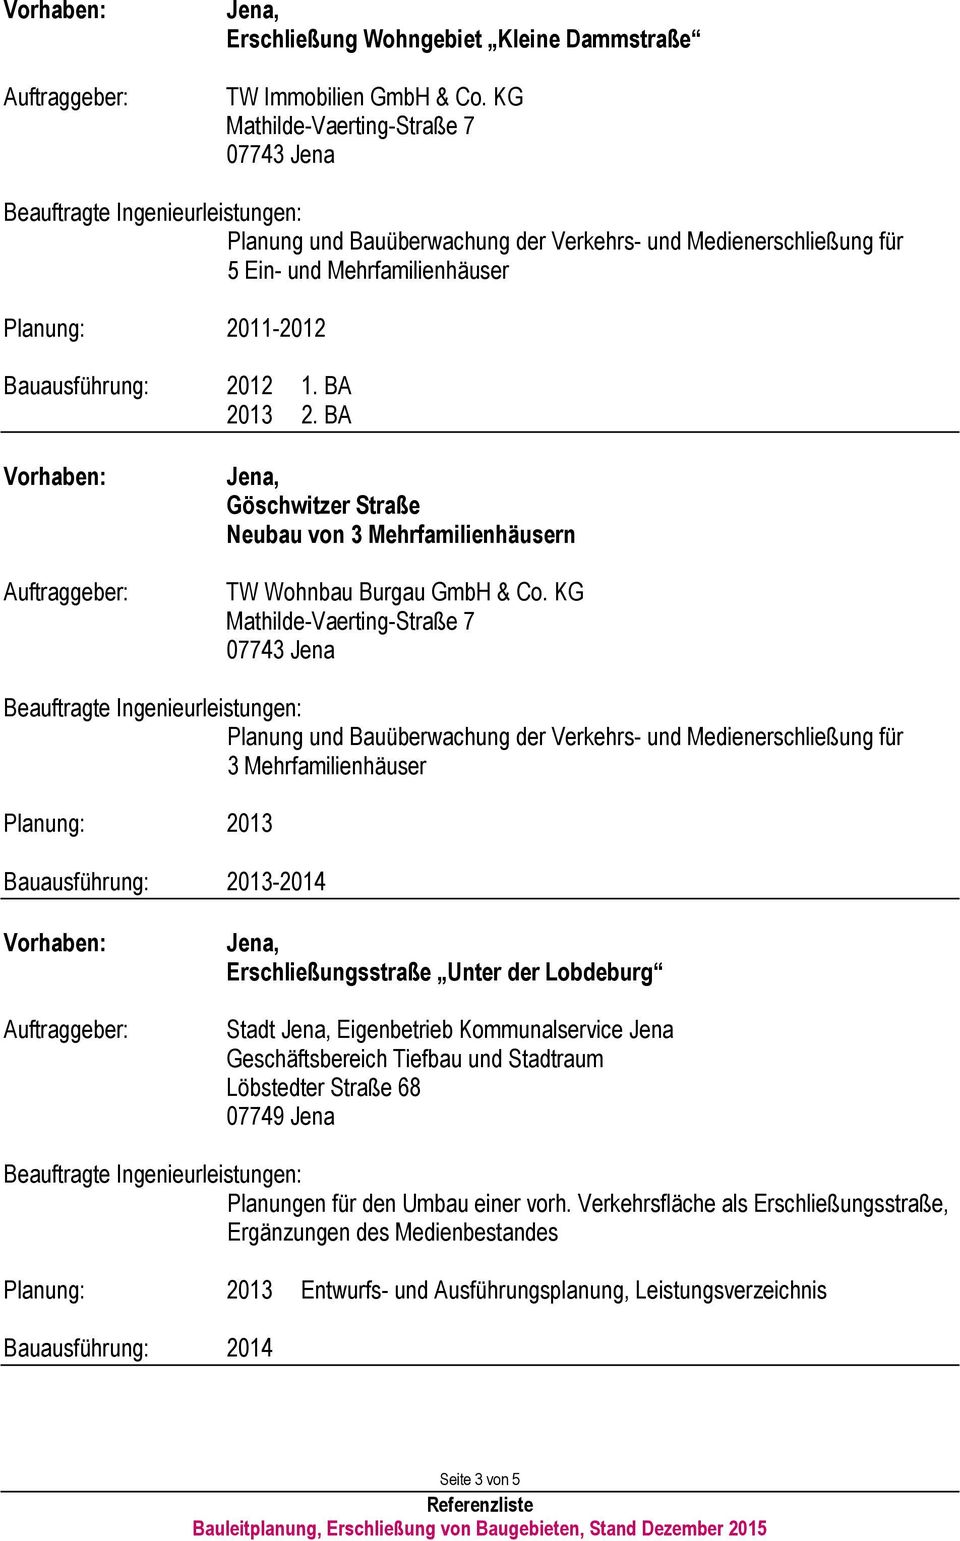 KG Mathilde-Vaerting-Straße 7 3 Mehrfamilienhäuser Planung: 2013 2013-2014 Erschließungsstraße Unter der Lobdeburg Stadt Eigenbetrieb Kommunalservice Jena